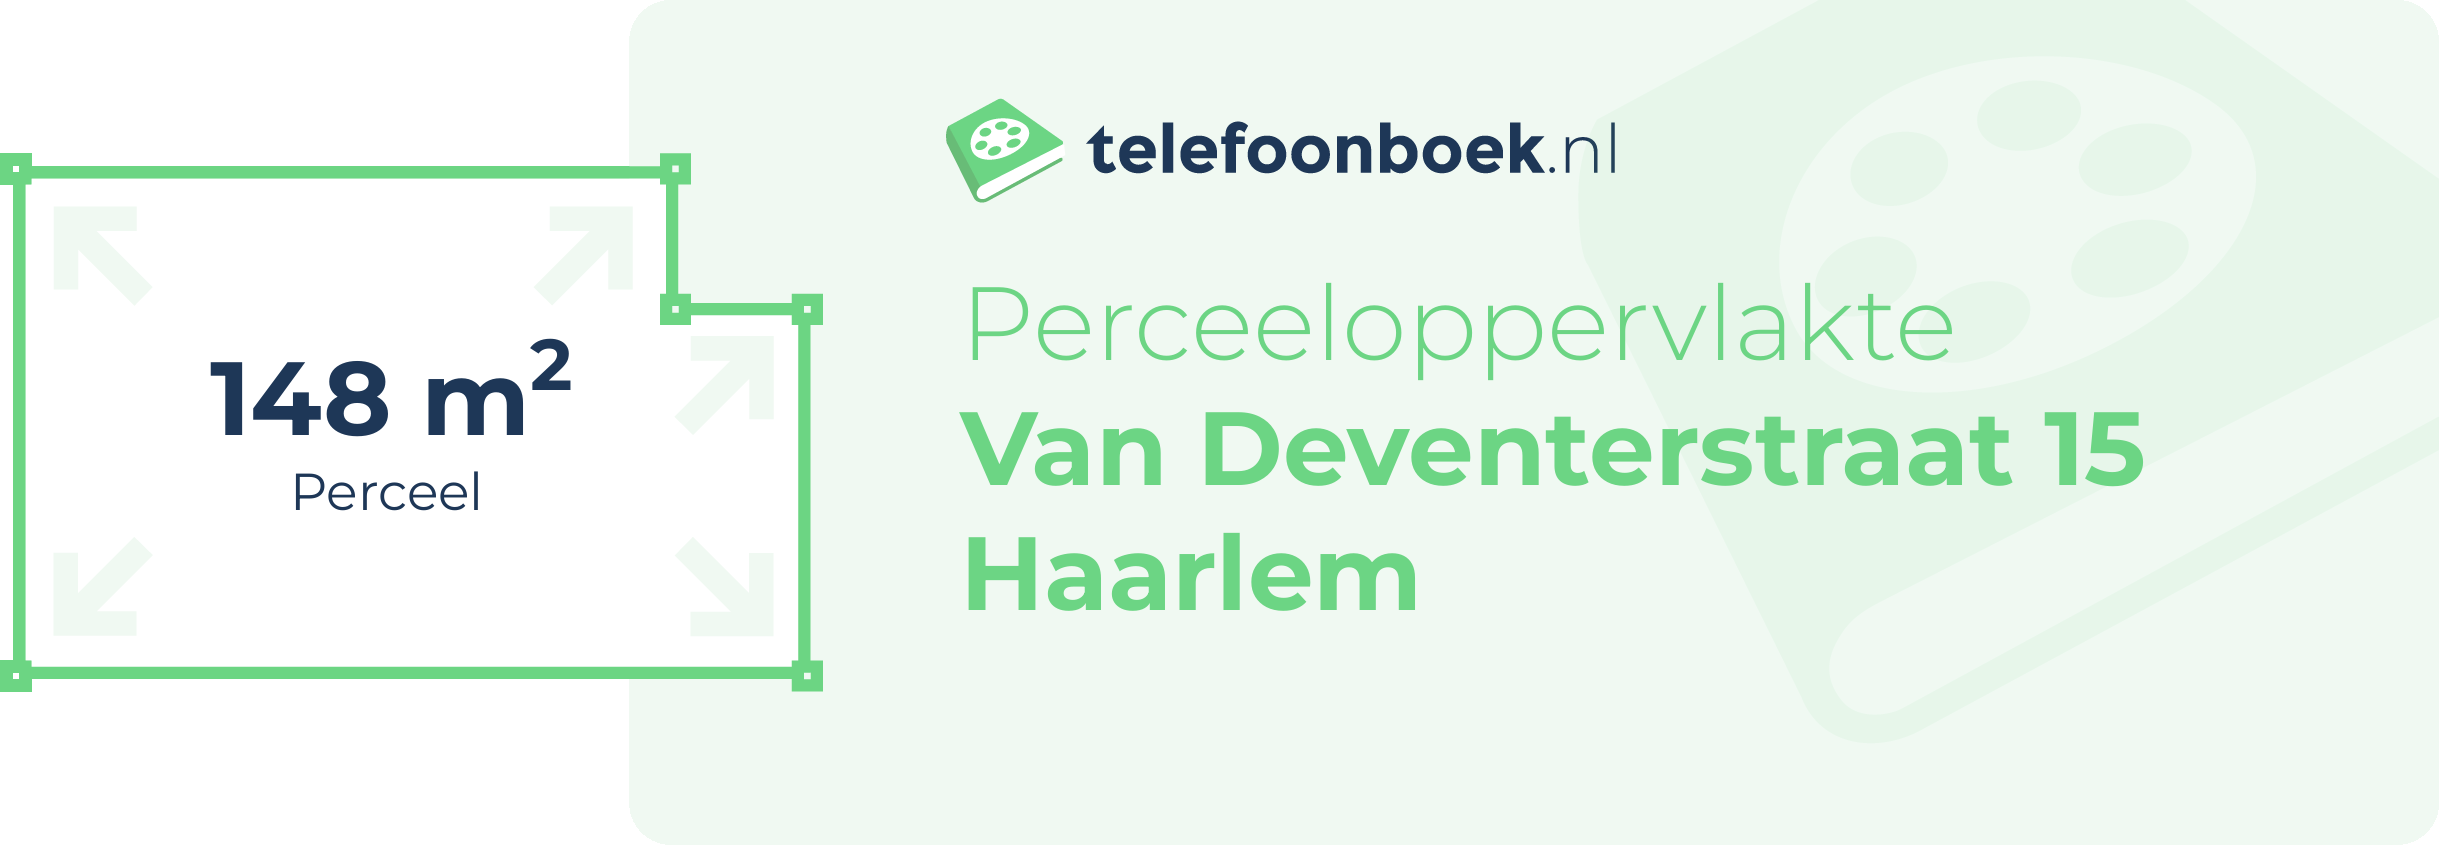 Perceeloppervlakte Van Deventerstraat 15 Haarlem